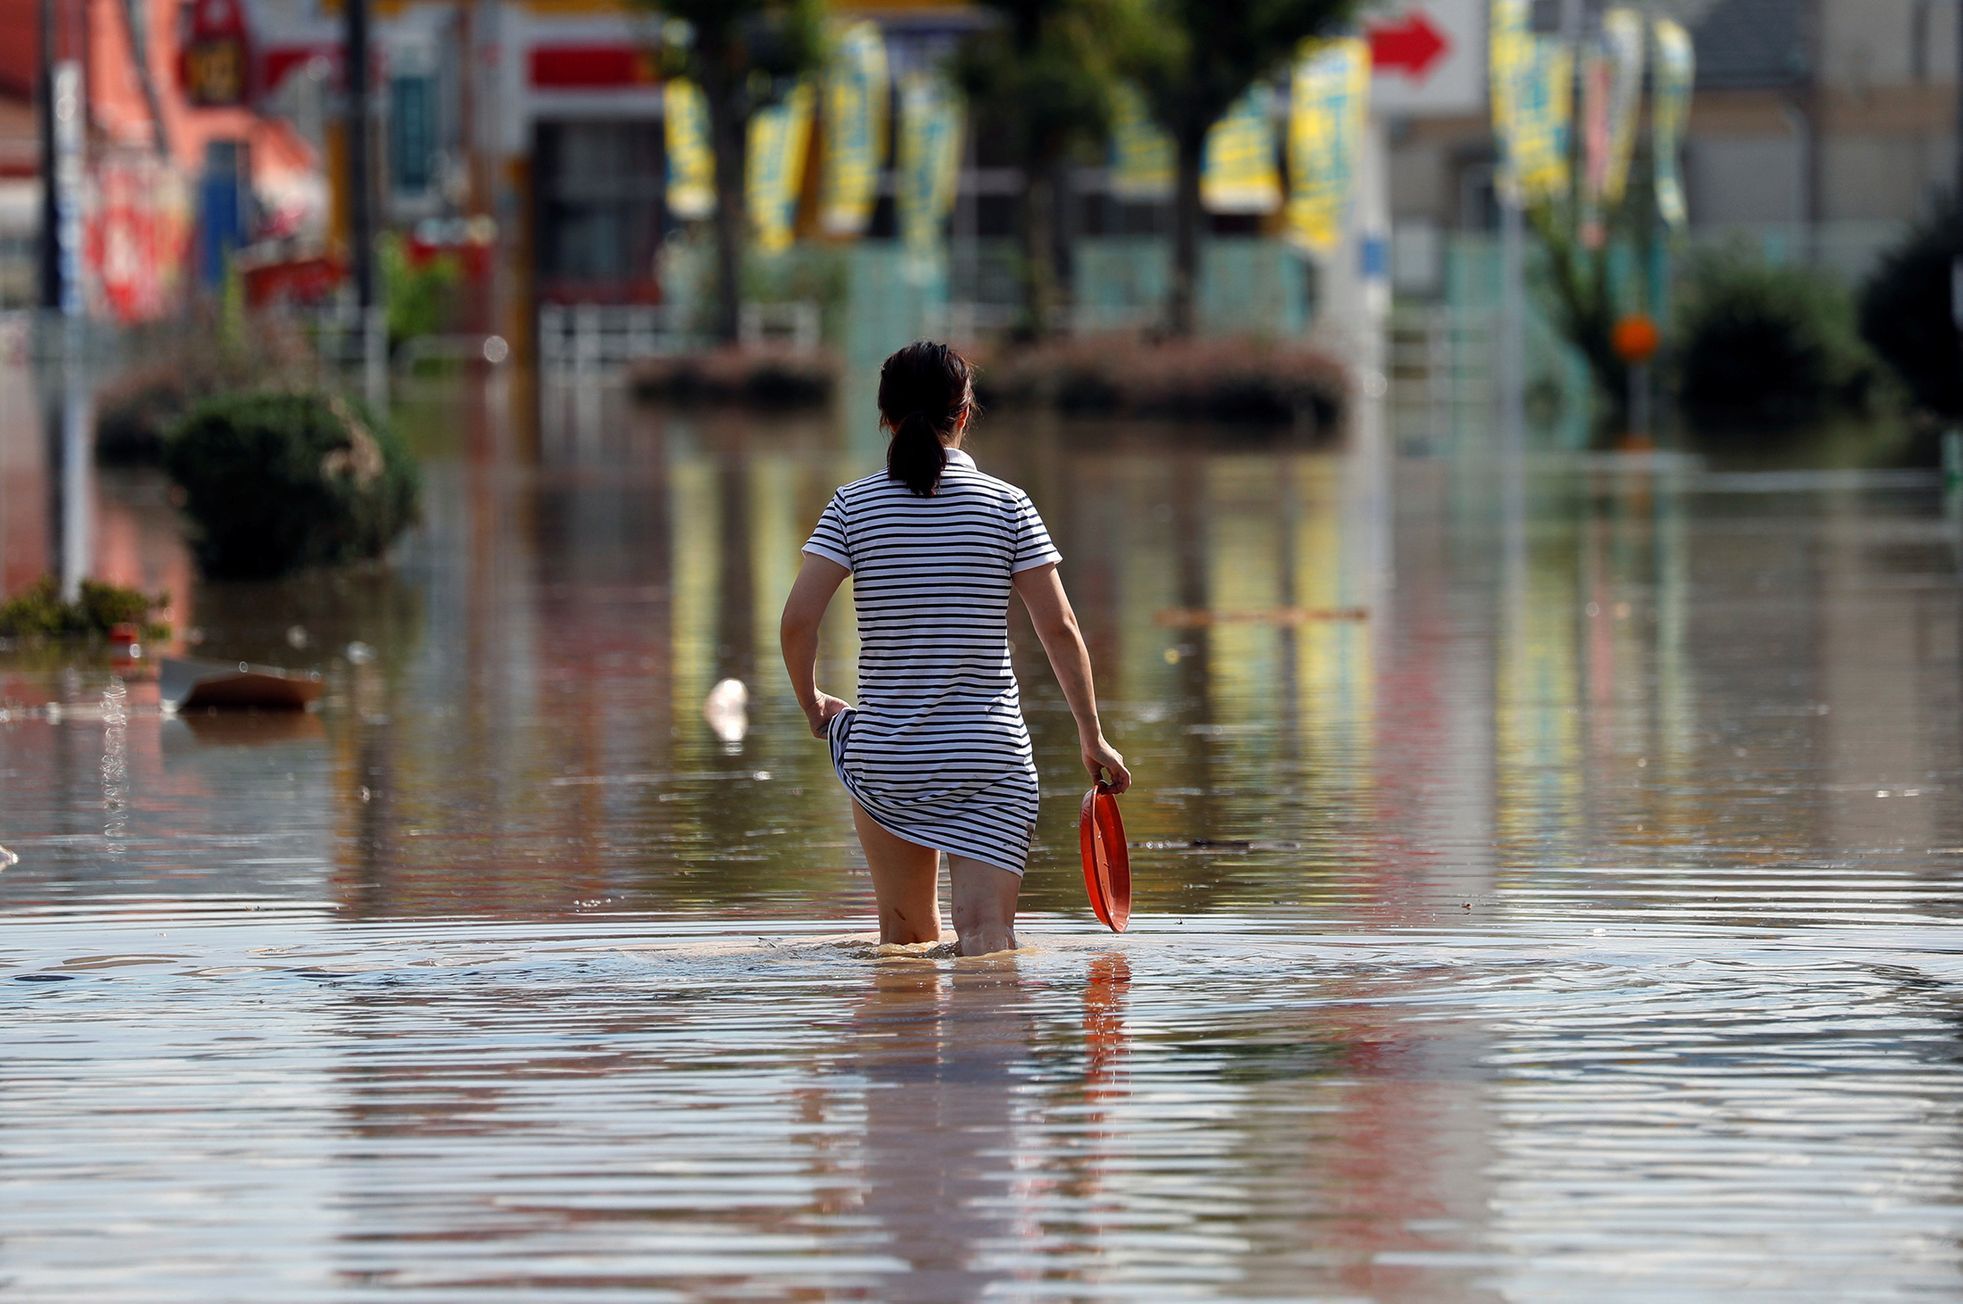 Fotogalerie / Záplavy v Japonsku / Reuters / Červenec 2018 / 16